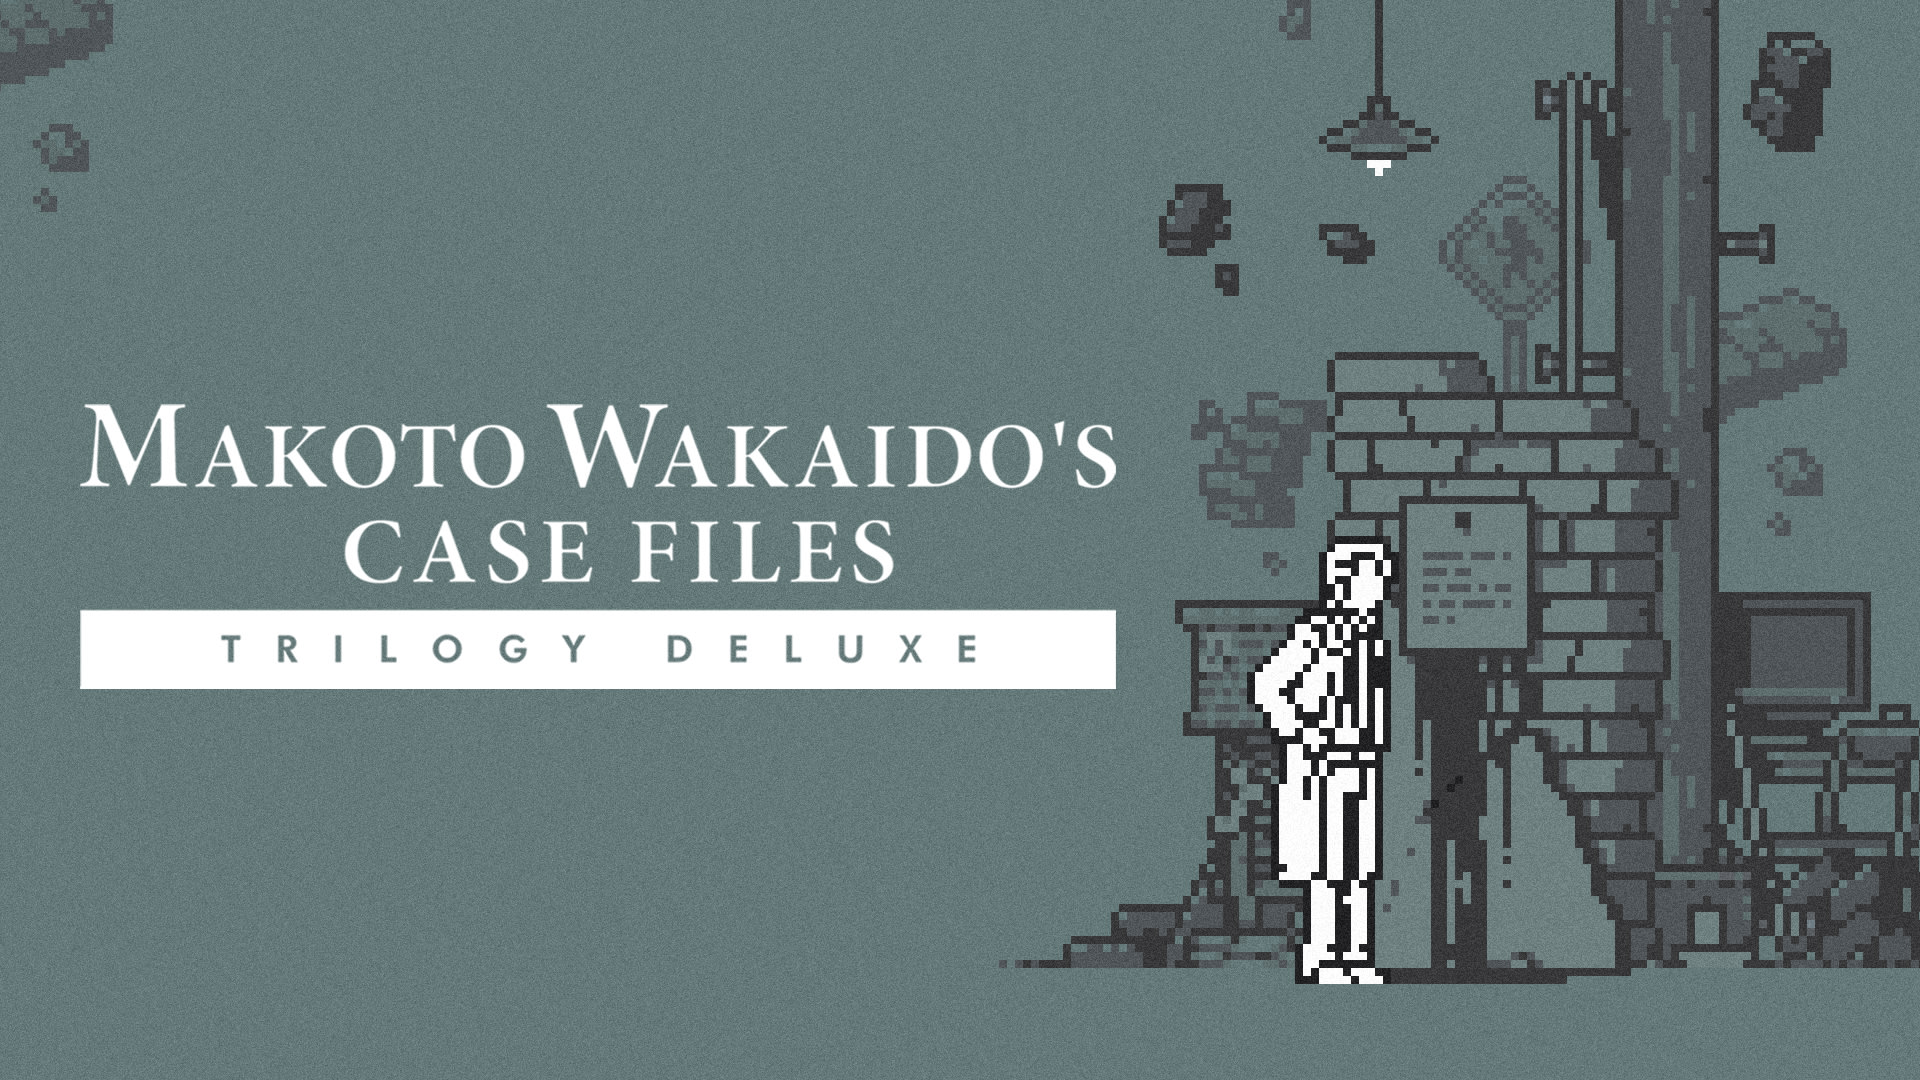 TRILOGÍA DELUXE de los archivos de casos de MAKOTO WAKAIDO